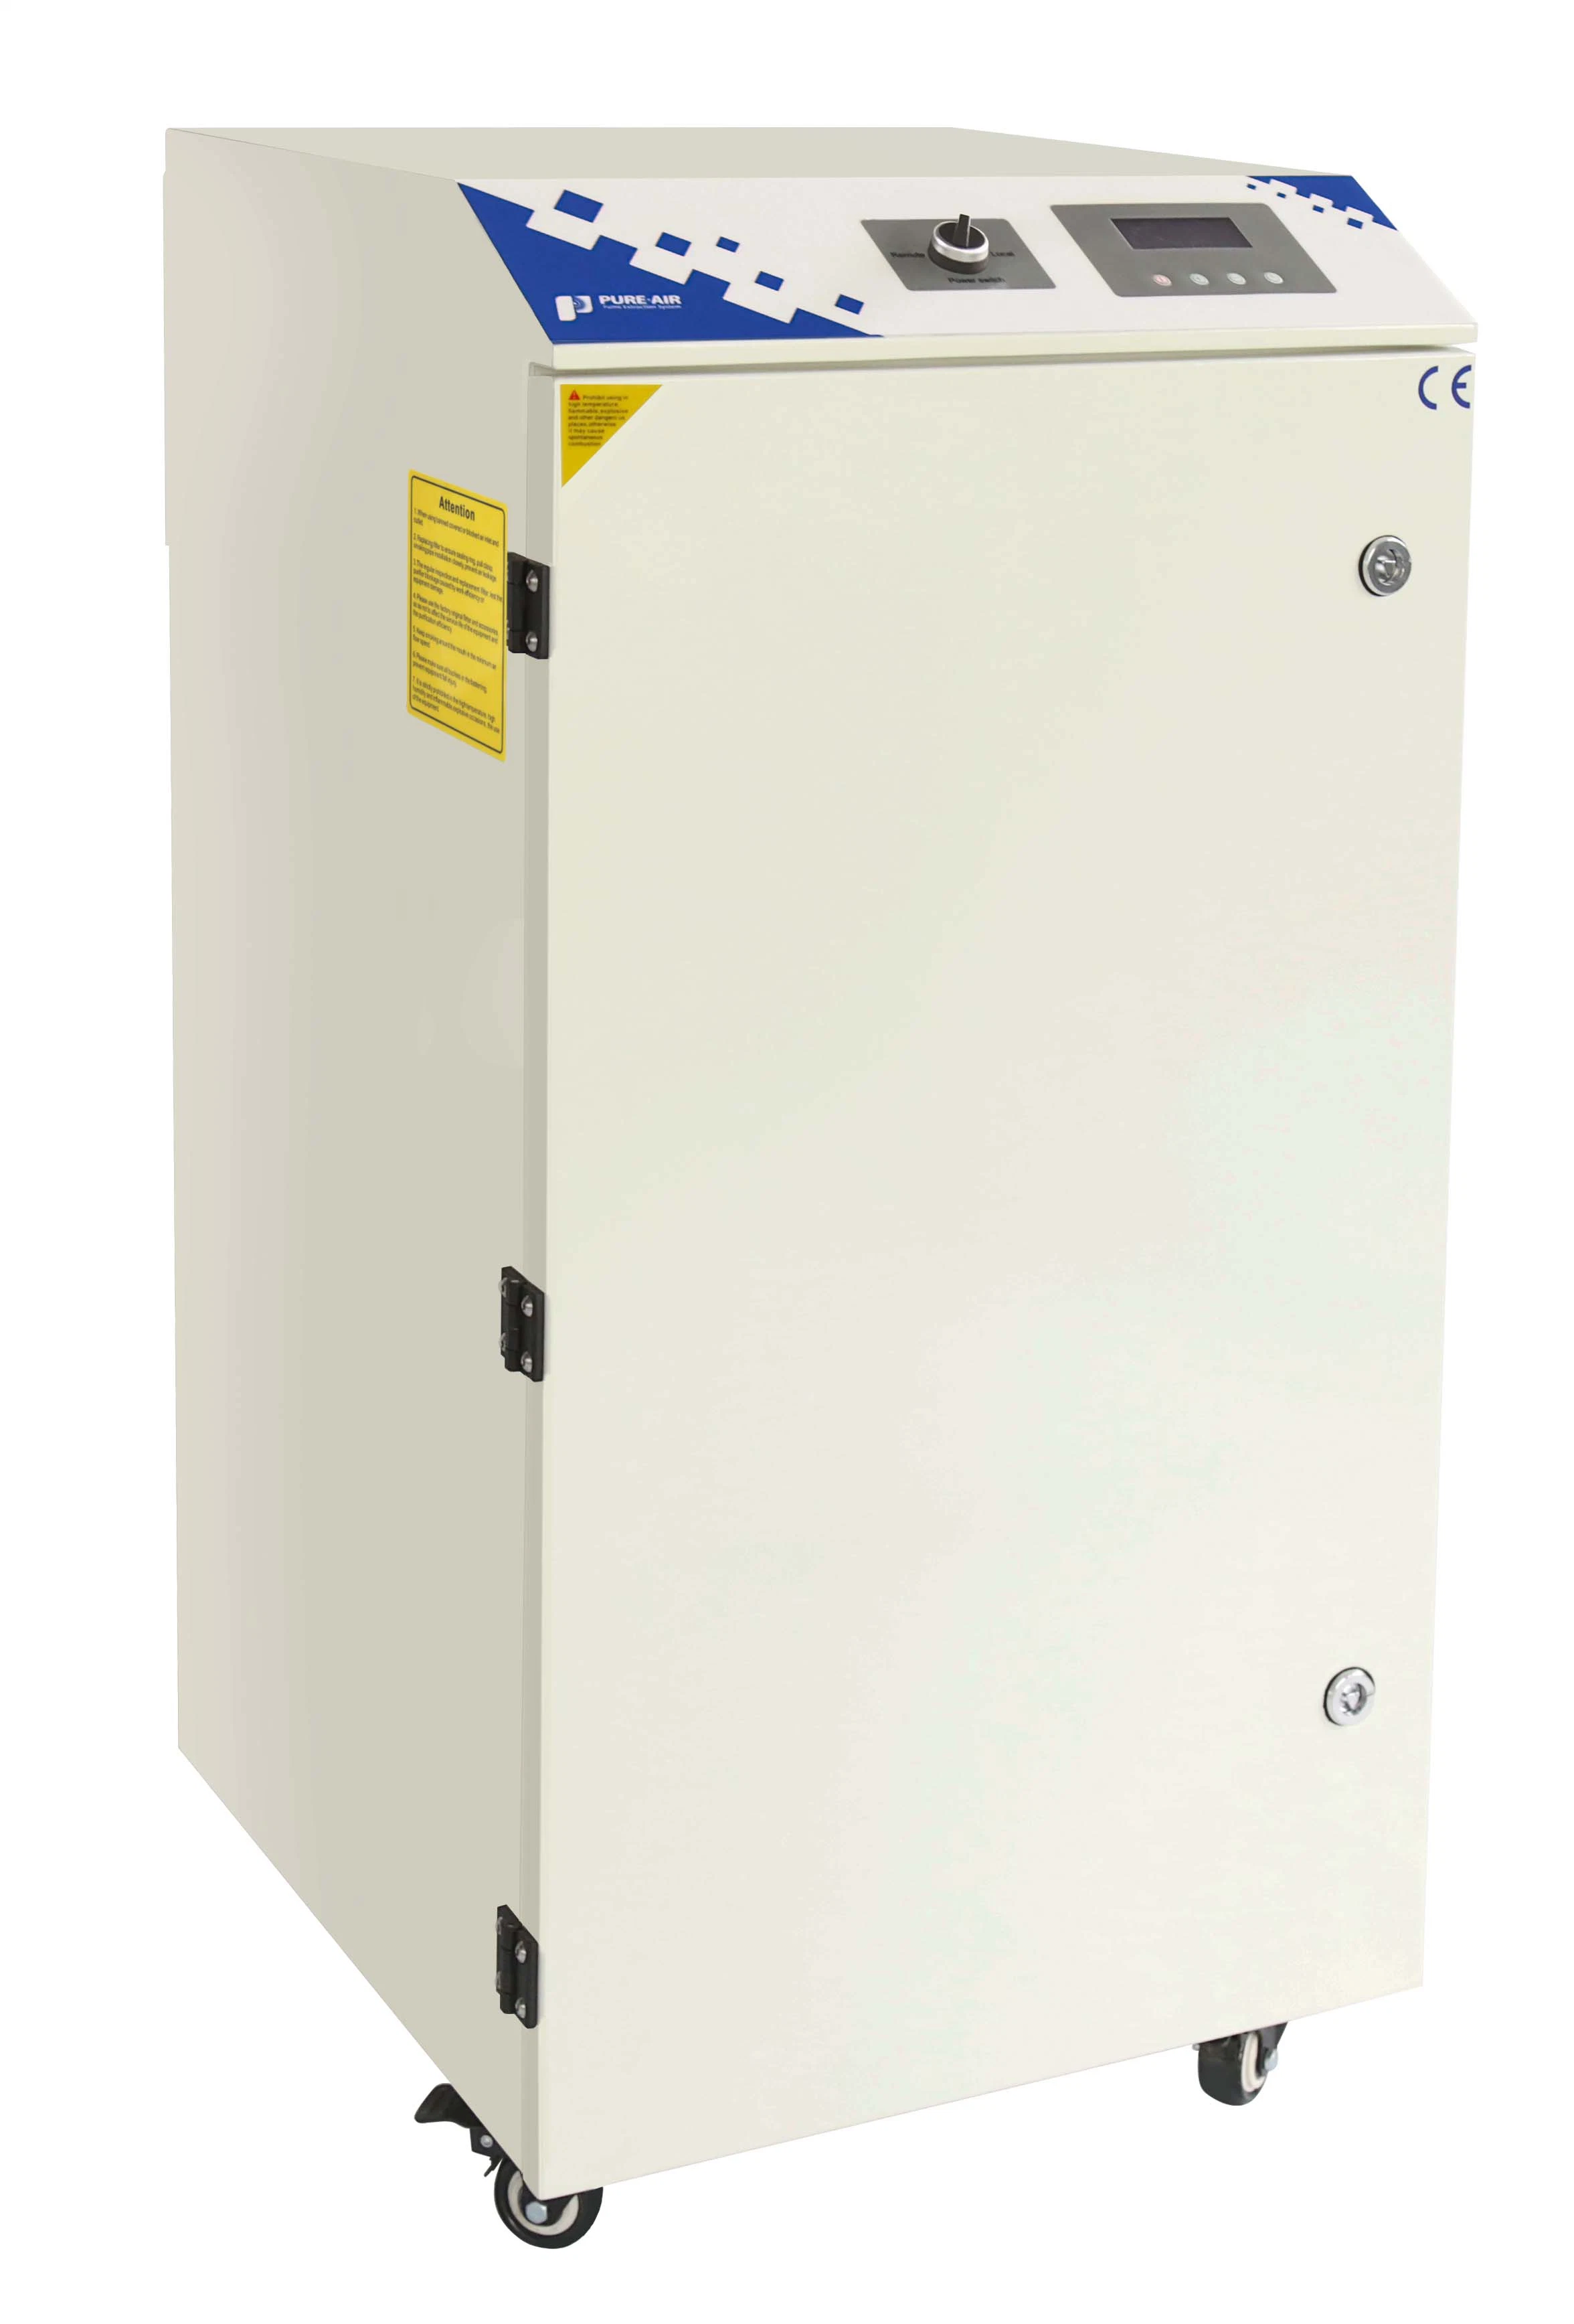 PURE-Air PA-500FS-IQ Septmeber Promotion Machine لتنظيف الهواء وAir Clean المعدات ذات الكربون النشط